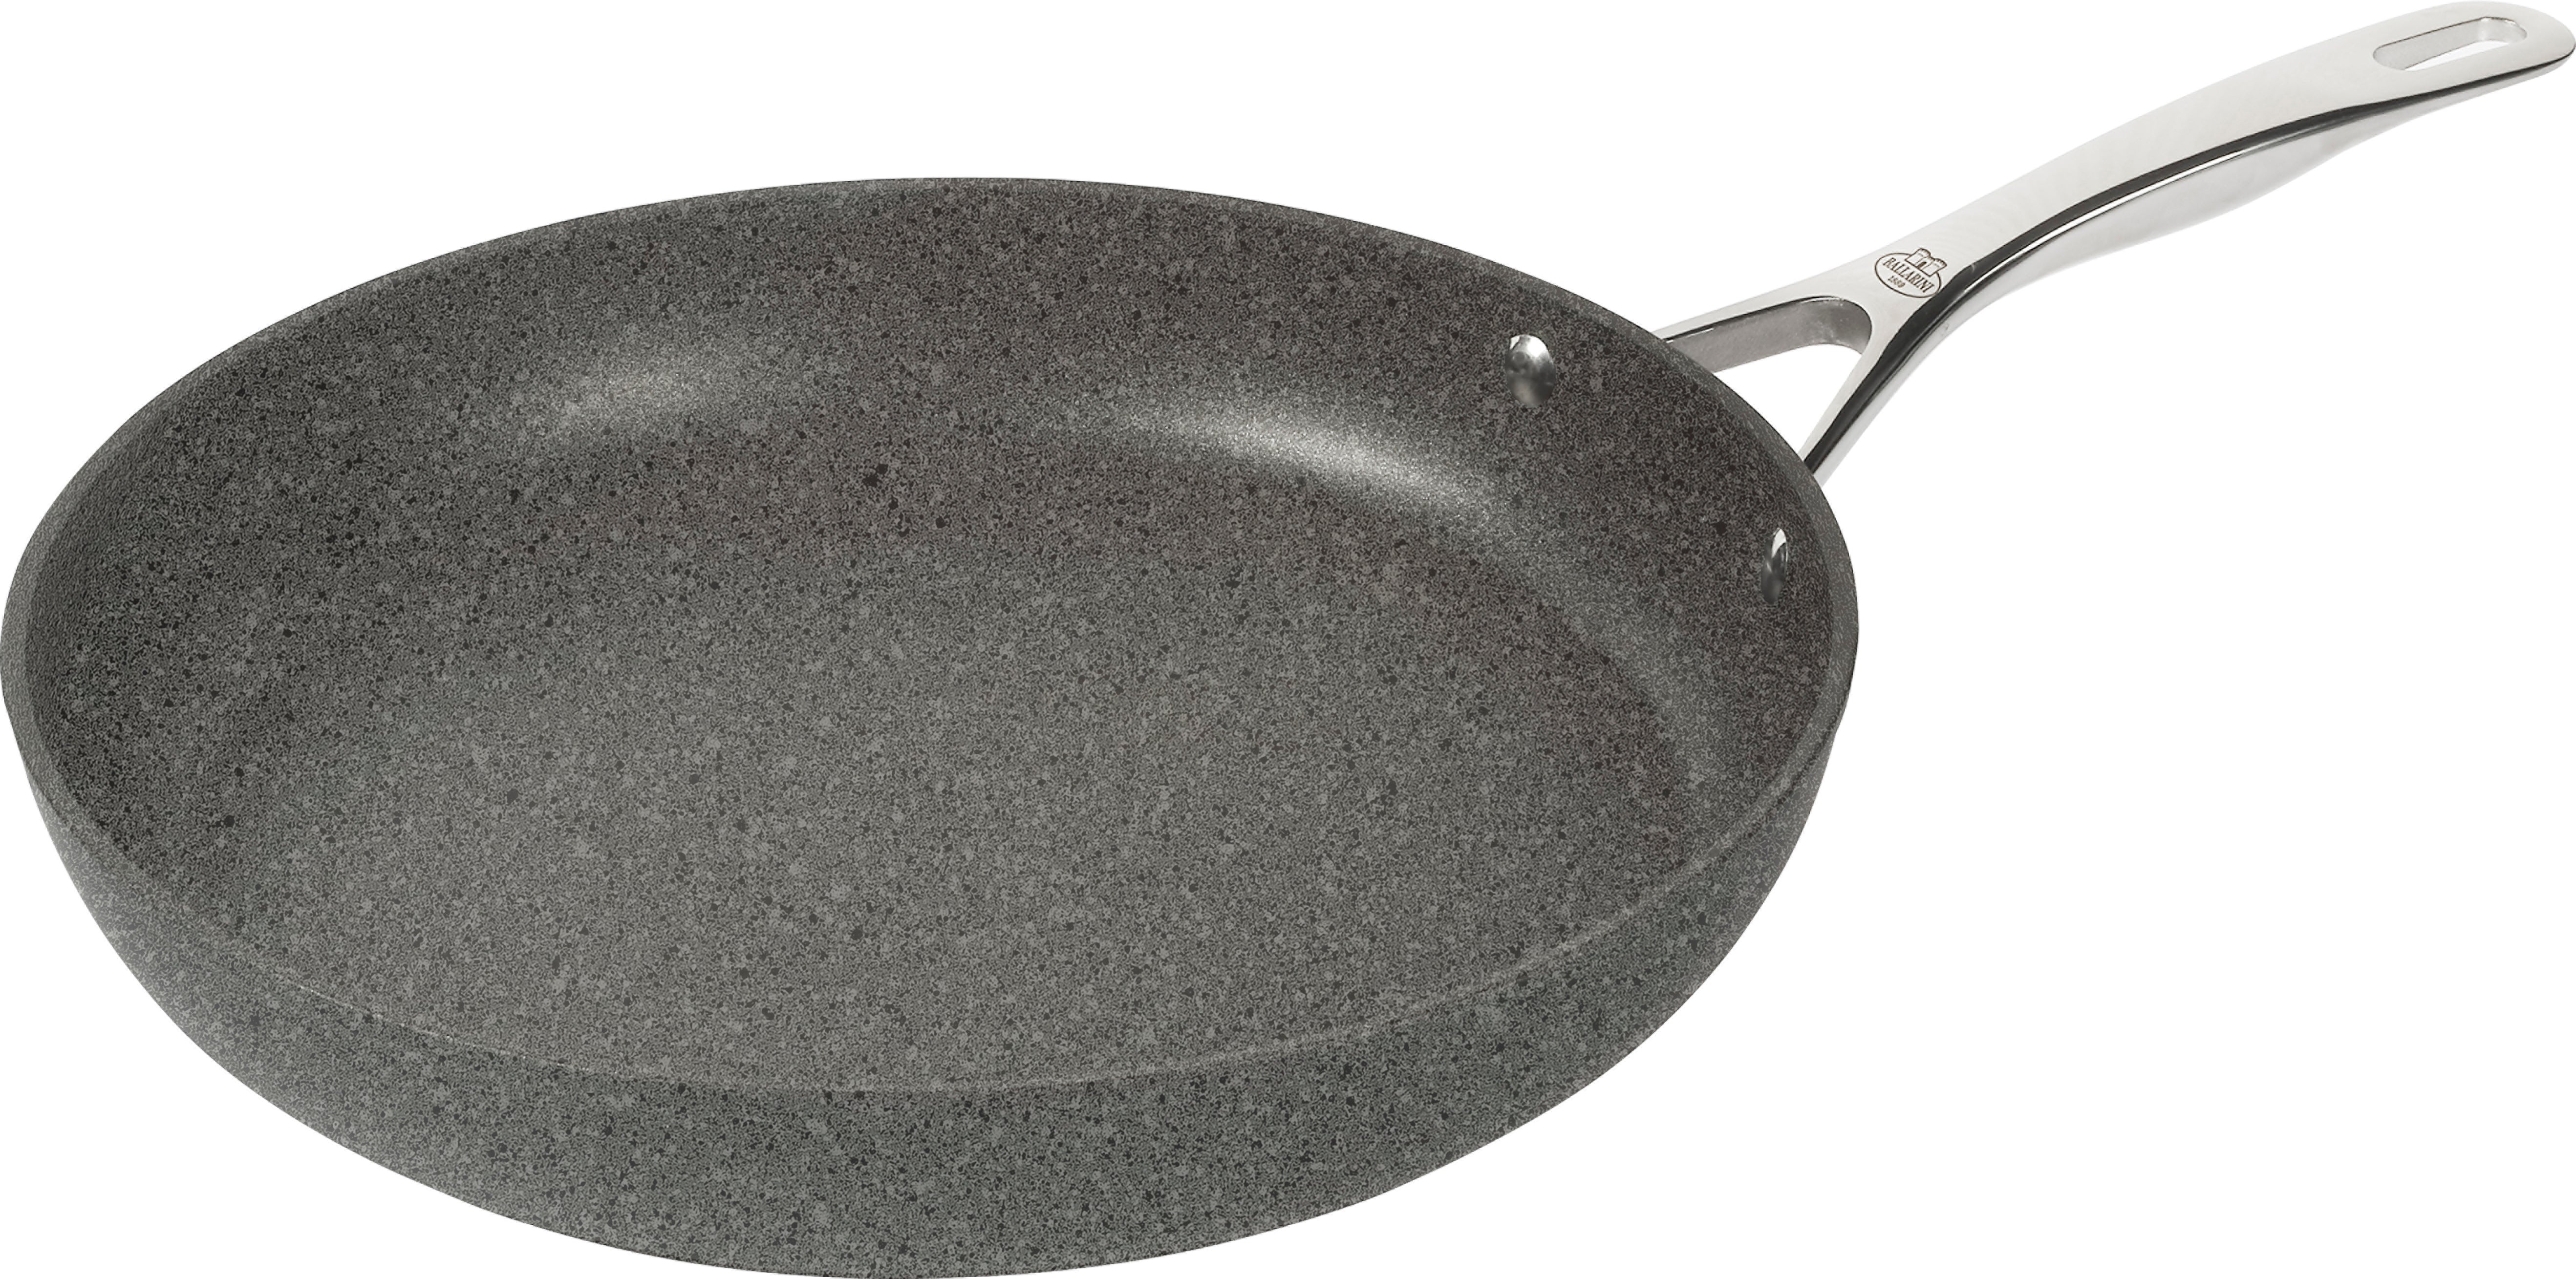 Ballarini Non-stick aluminum frying pan with handle, Salina line, 24 cm